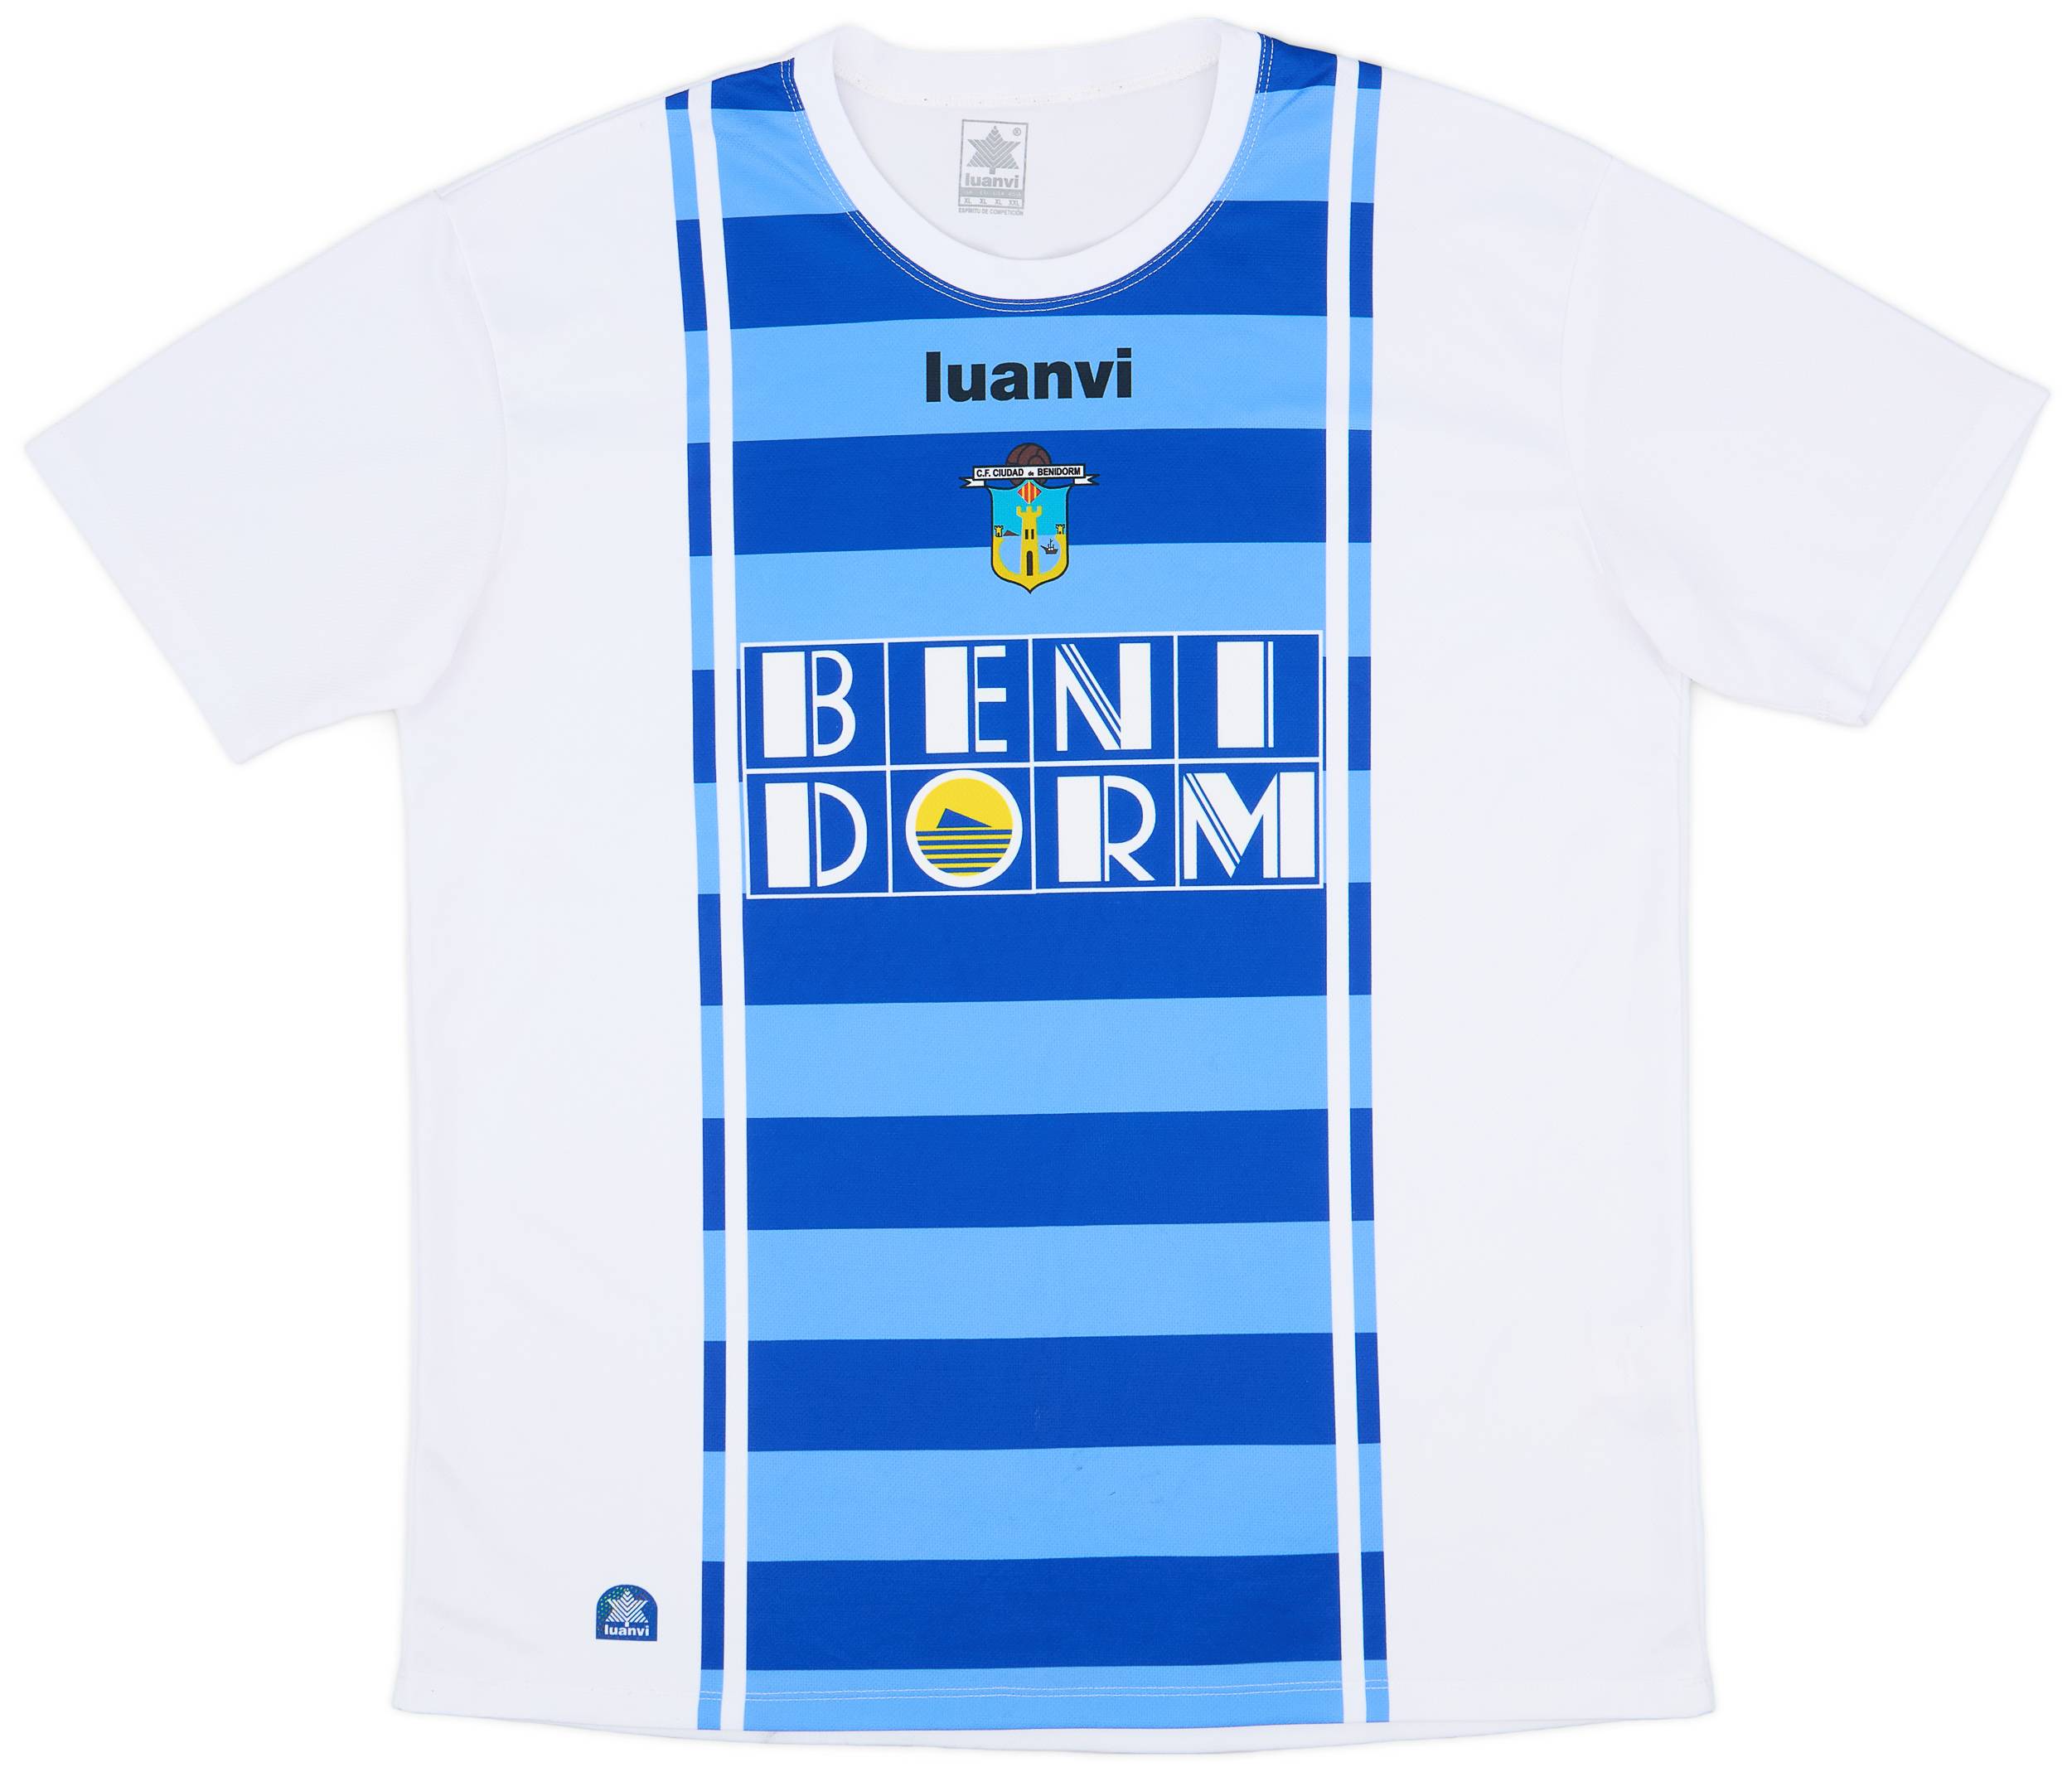 2015-16 Benidorm Home Shirt - 9/10 - (XL)